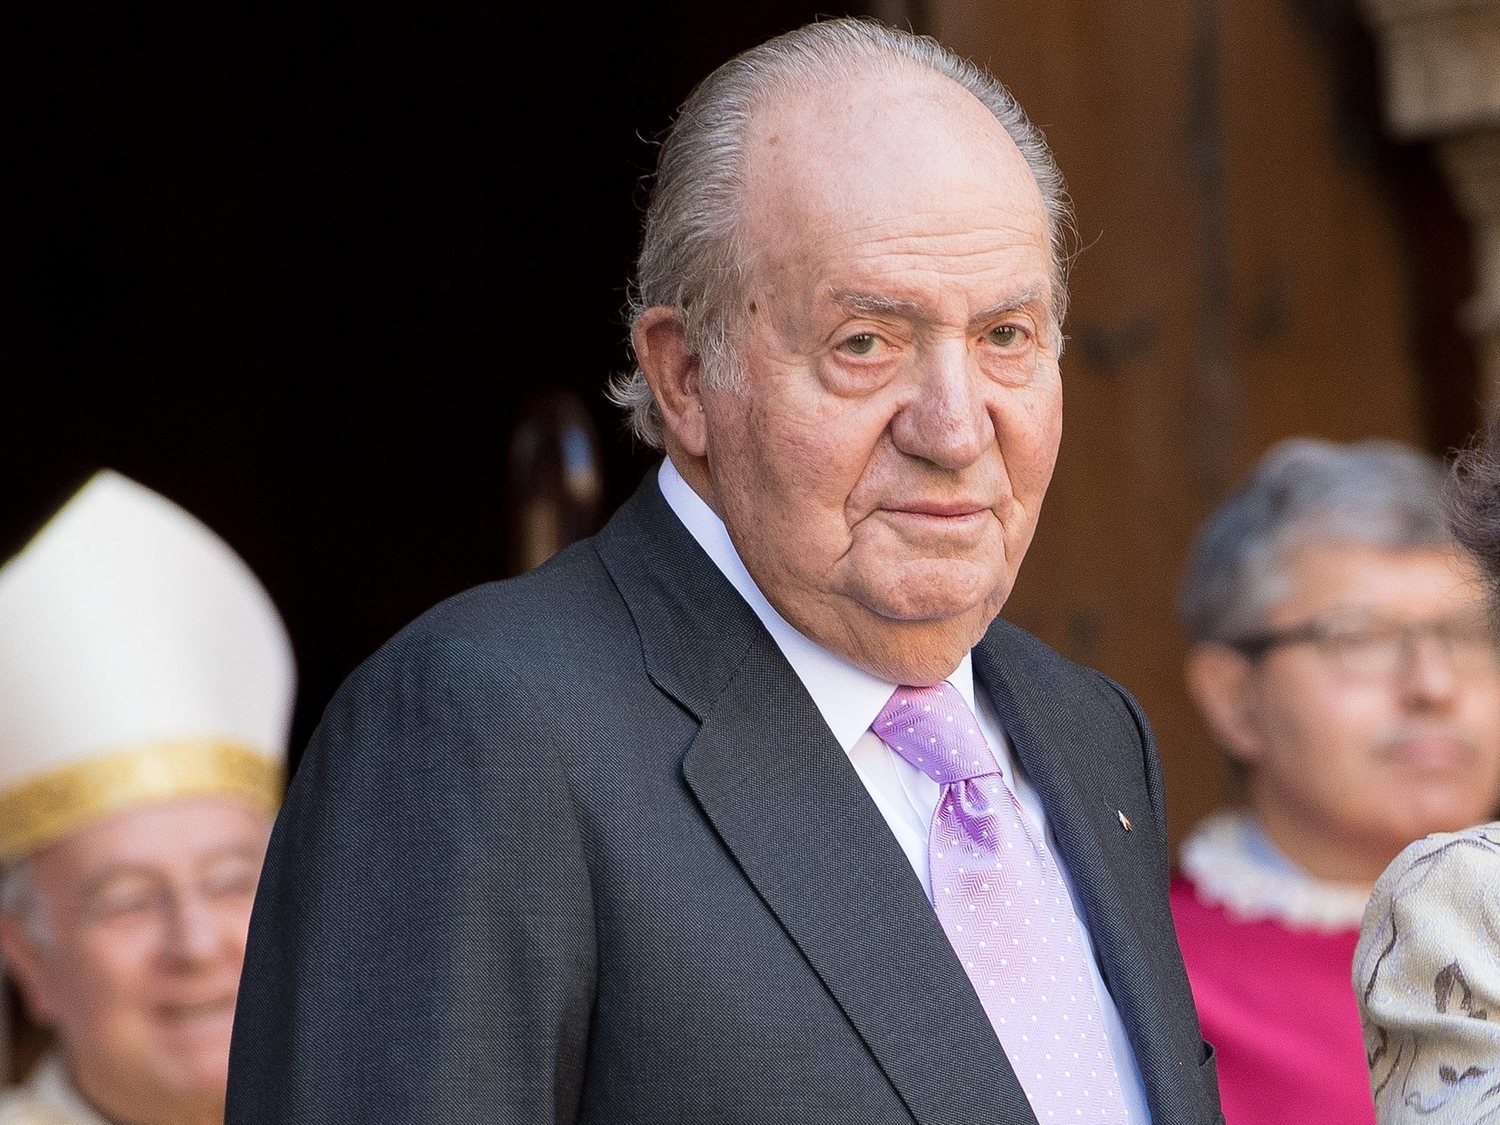 El rey Juan Carlos se siente "víctima de un plan orquestado para instaurar una república"